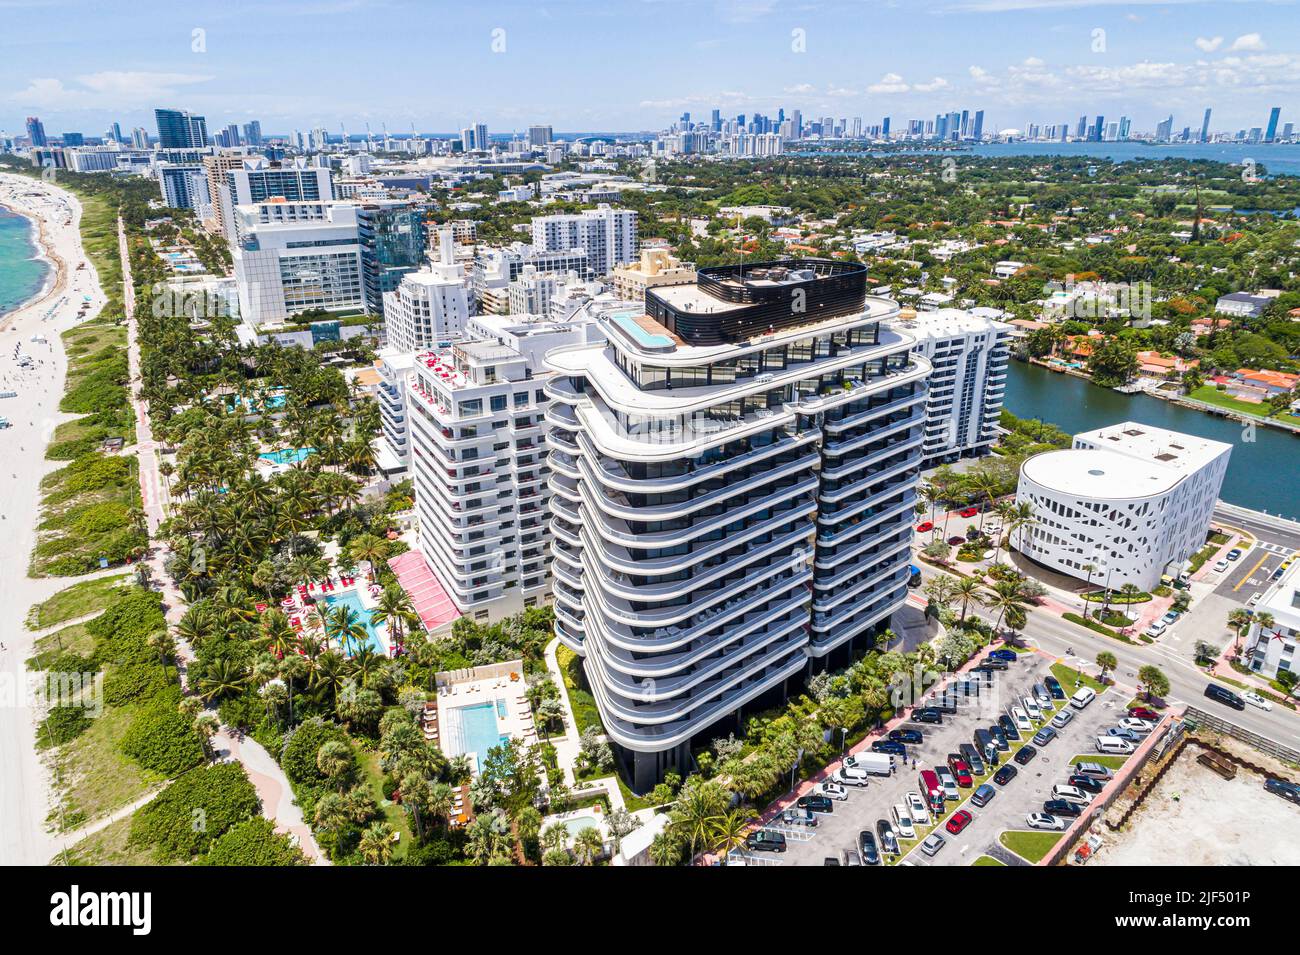 Miami Beach Florida, vista aérea desde arriba, Faena House complejo de apartamentos de lujo hotel residencias frente al mar, costa del Océano Atlántico Foto de stock